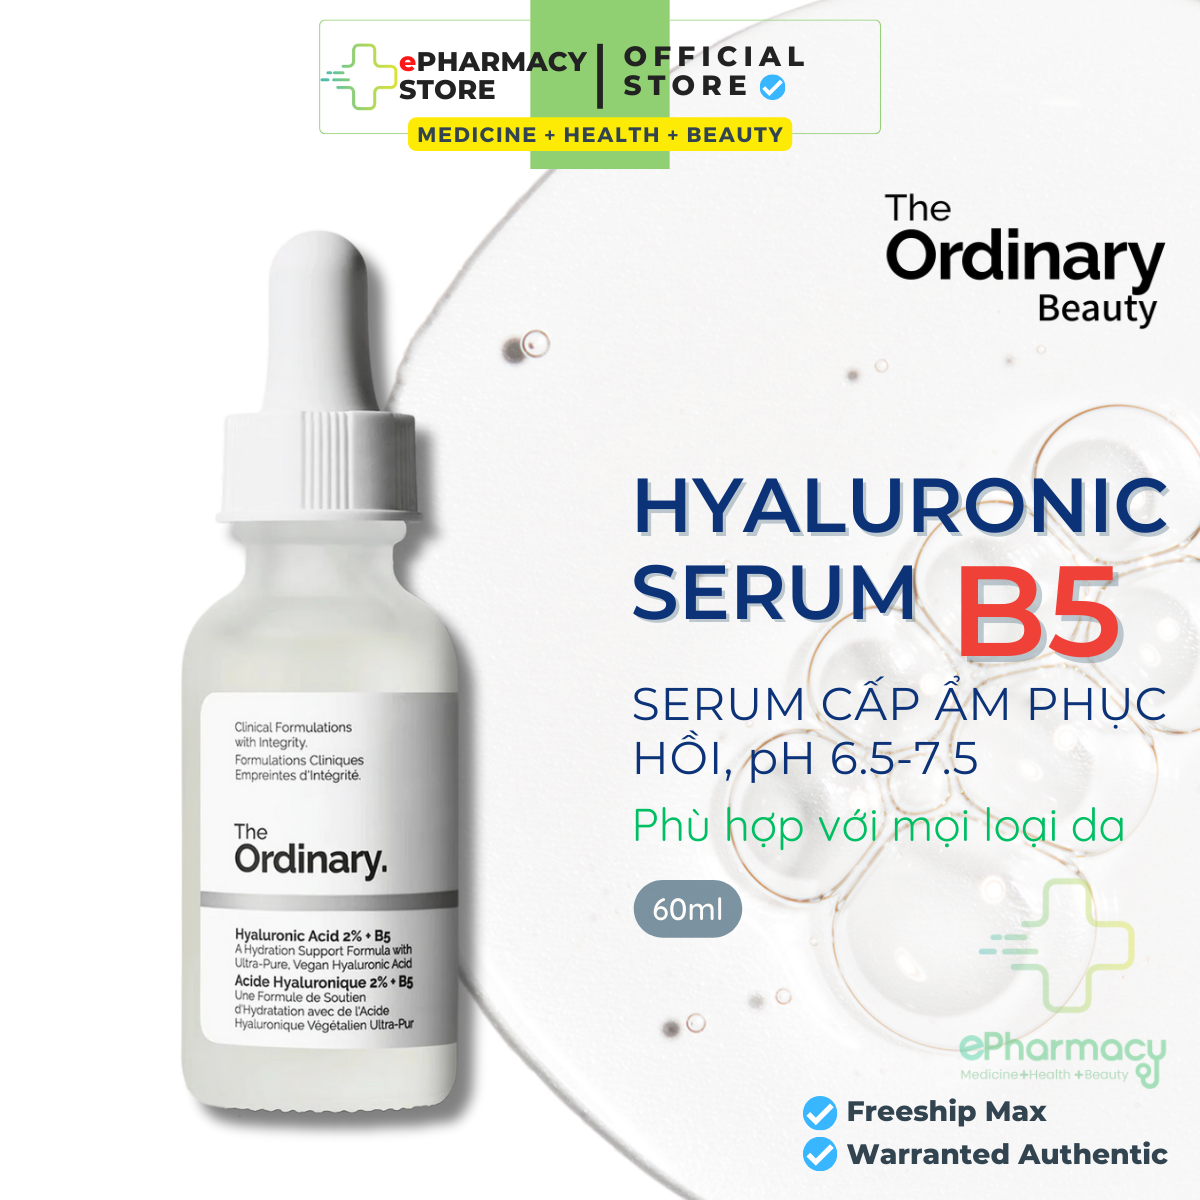 HYALURONIC ACID 2% + B5 THE ORDINARY SERUM - Tinh chất The Ordinary B5 cấp ẩm và phục hồi da 60ML